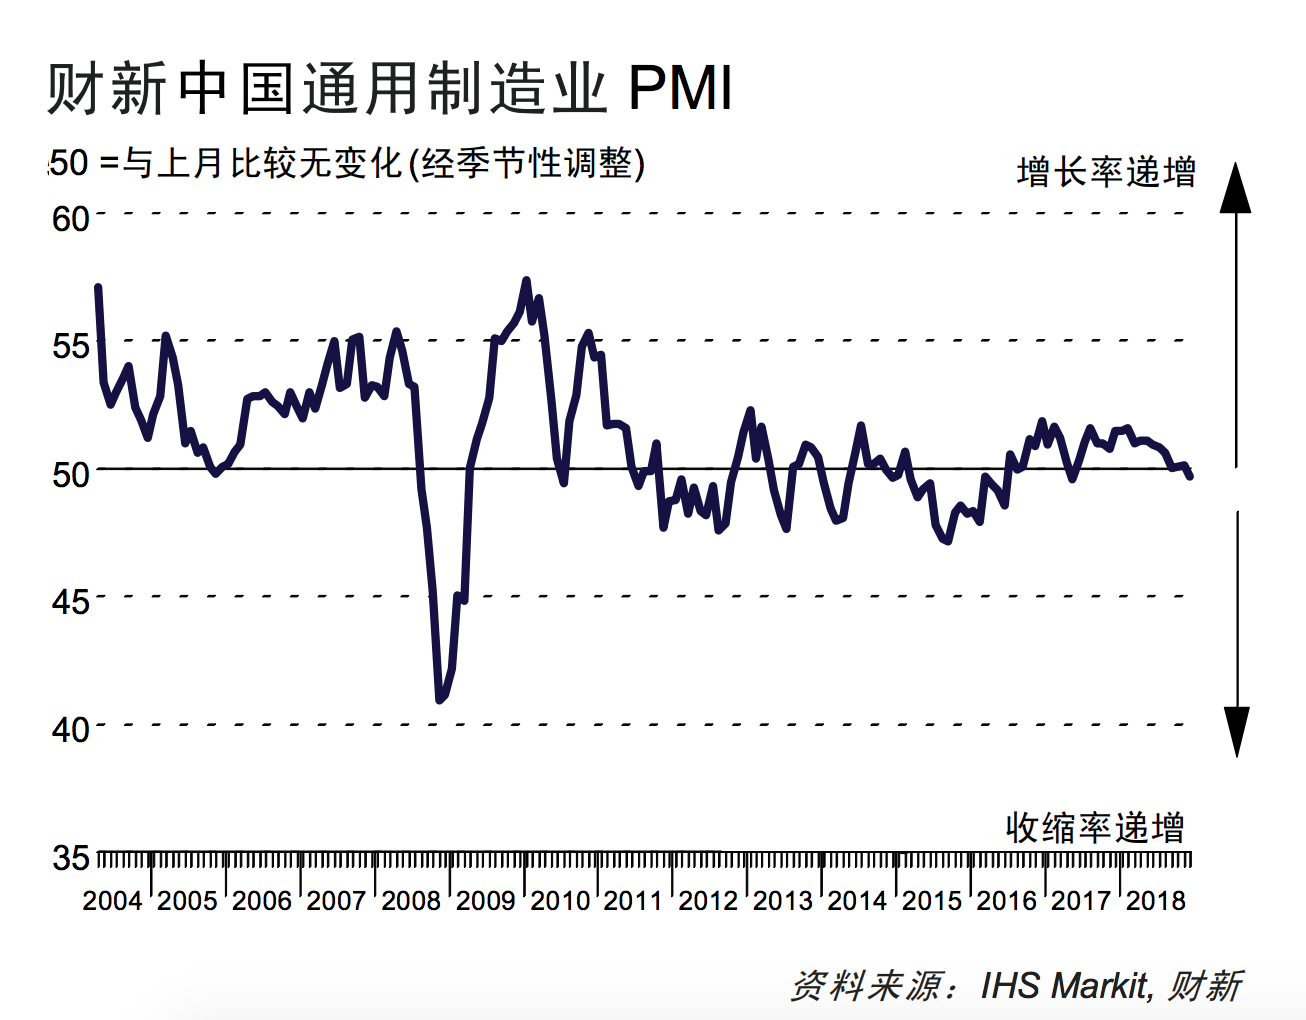 中国12月财新制造业PMI49.7 2017年5月以来首次跌破荣枯线